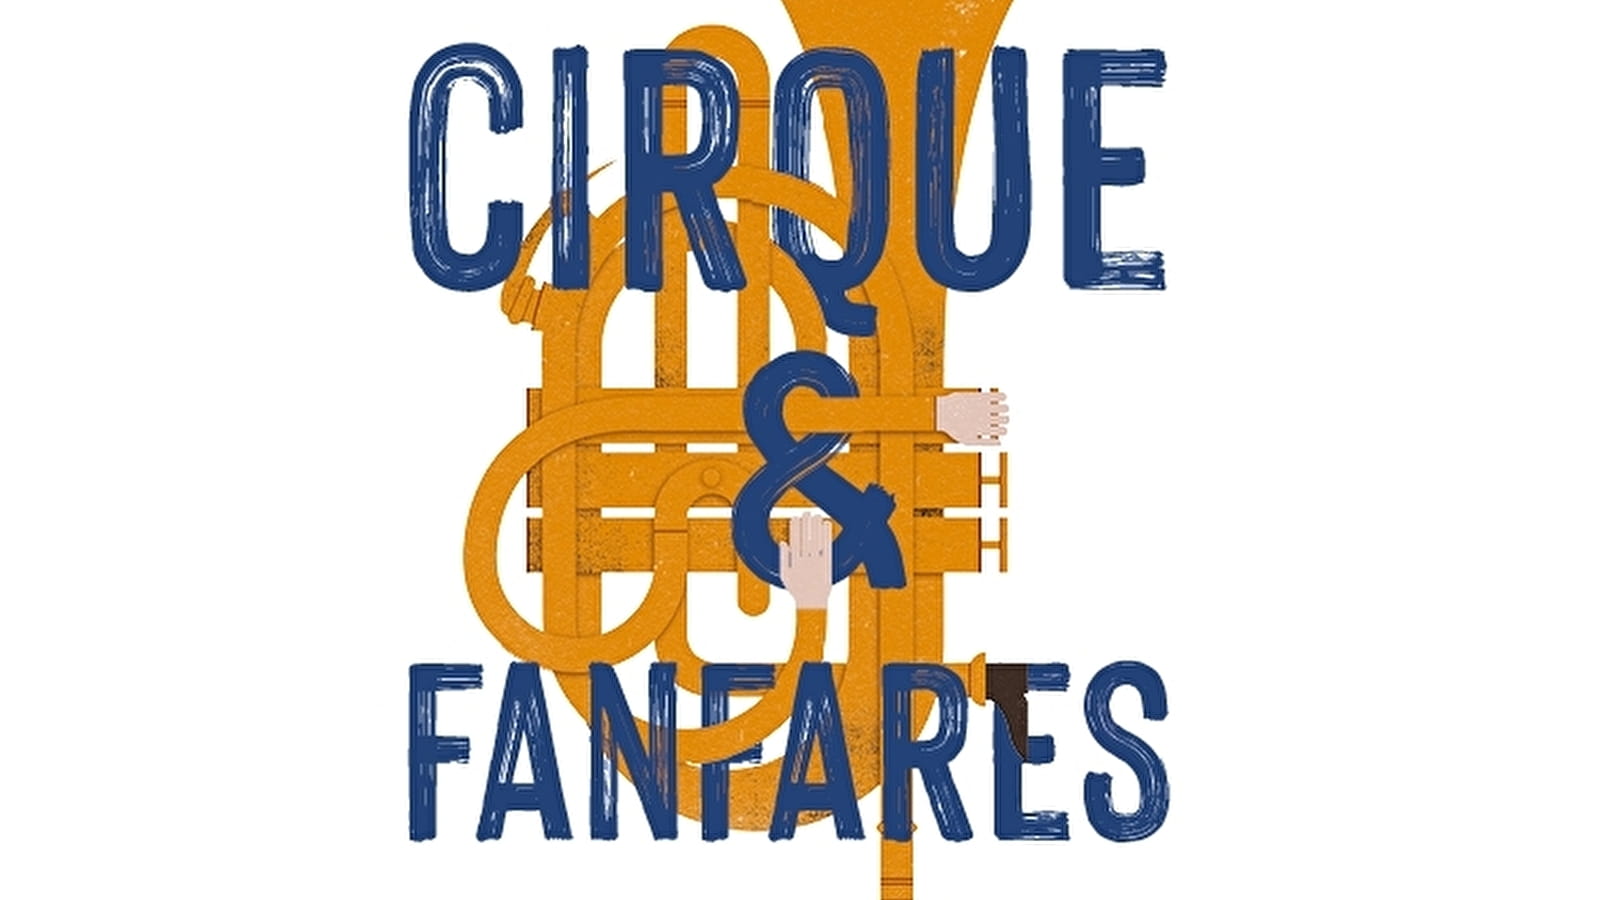 Cirque et fanfares